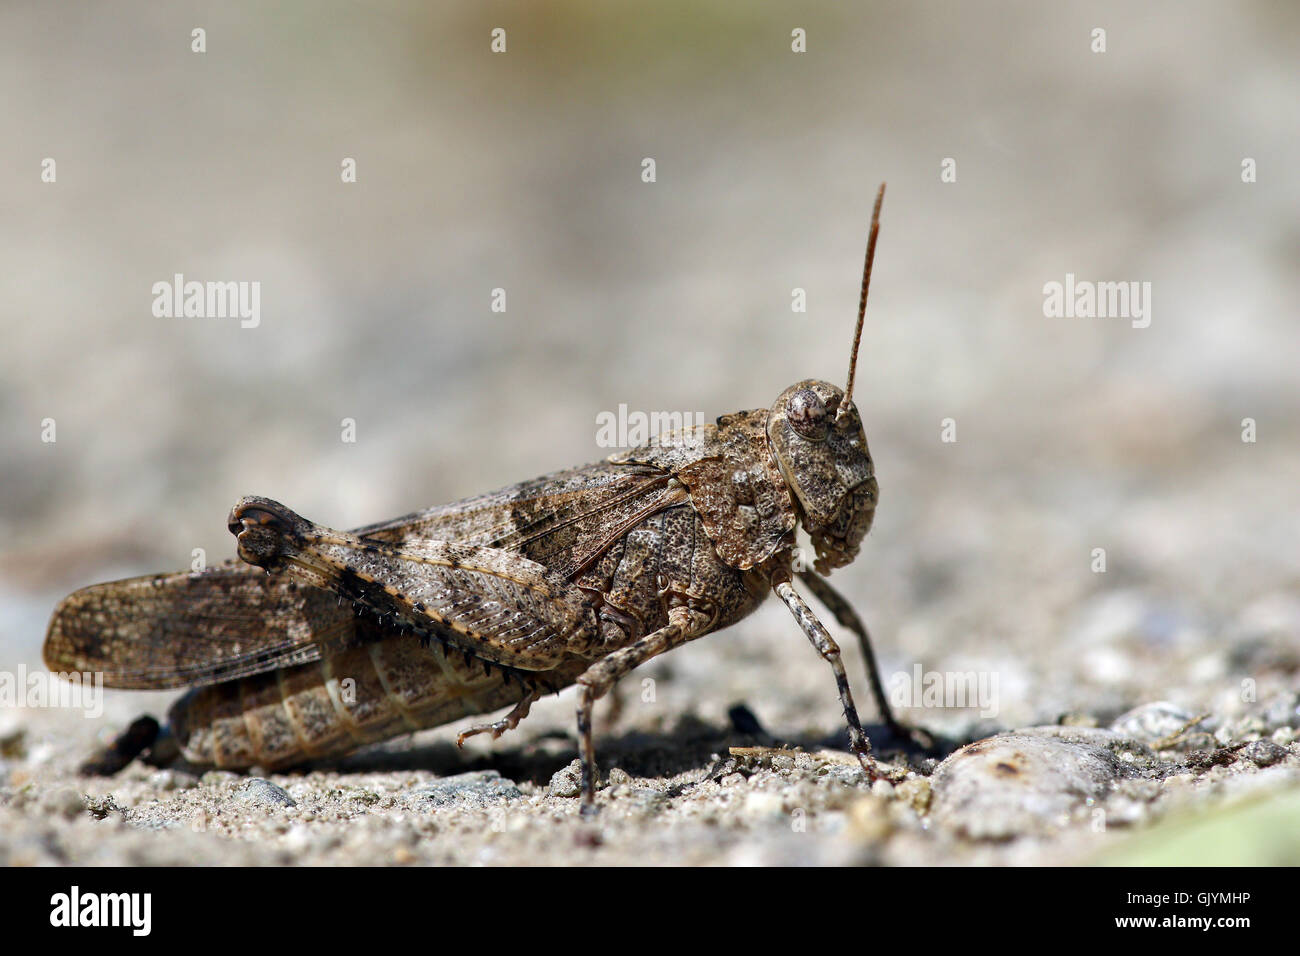 Macro portrait of desert grasshopper or locust Stock Photo